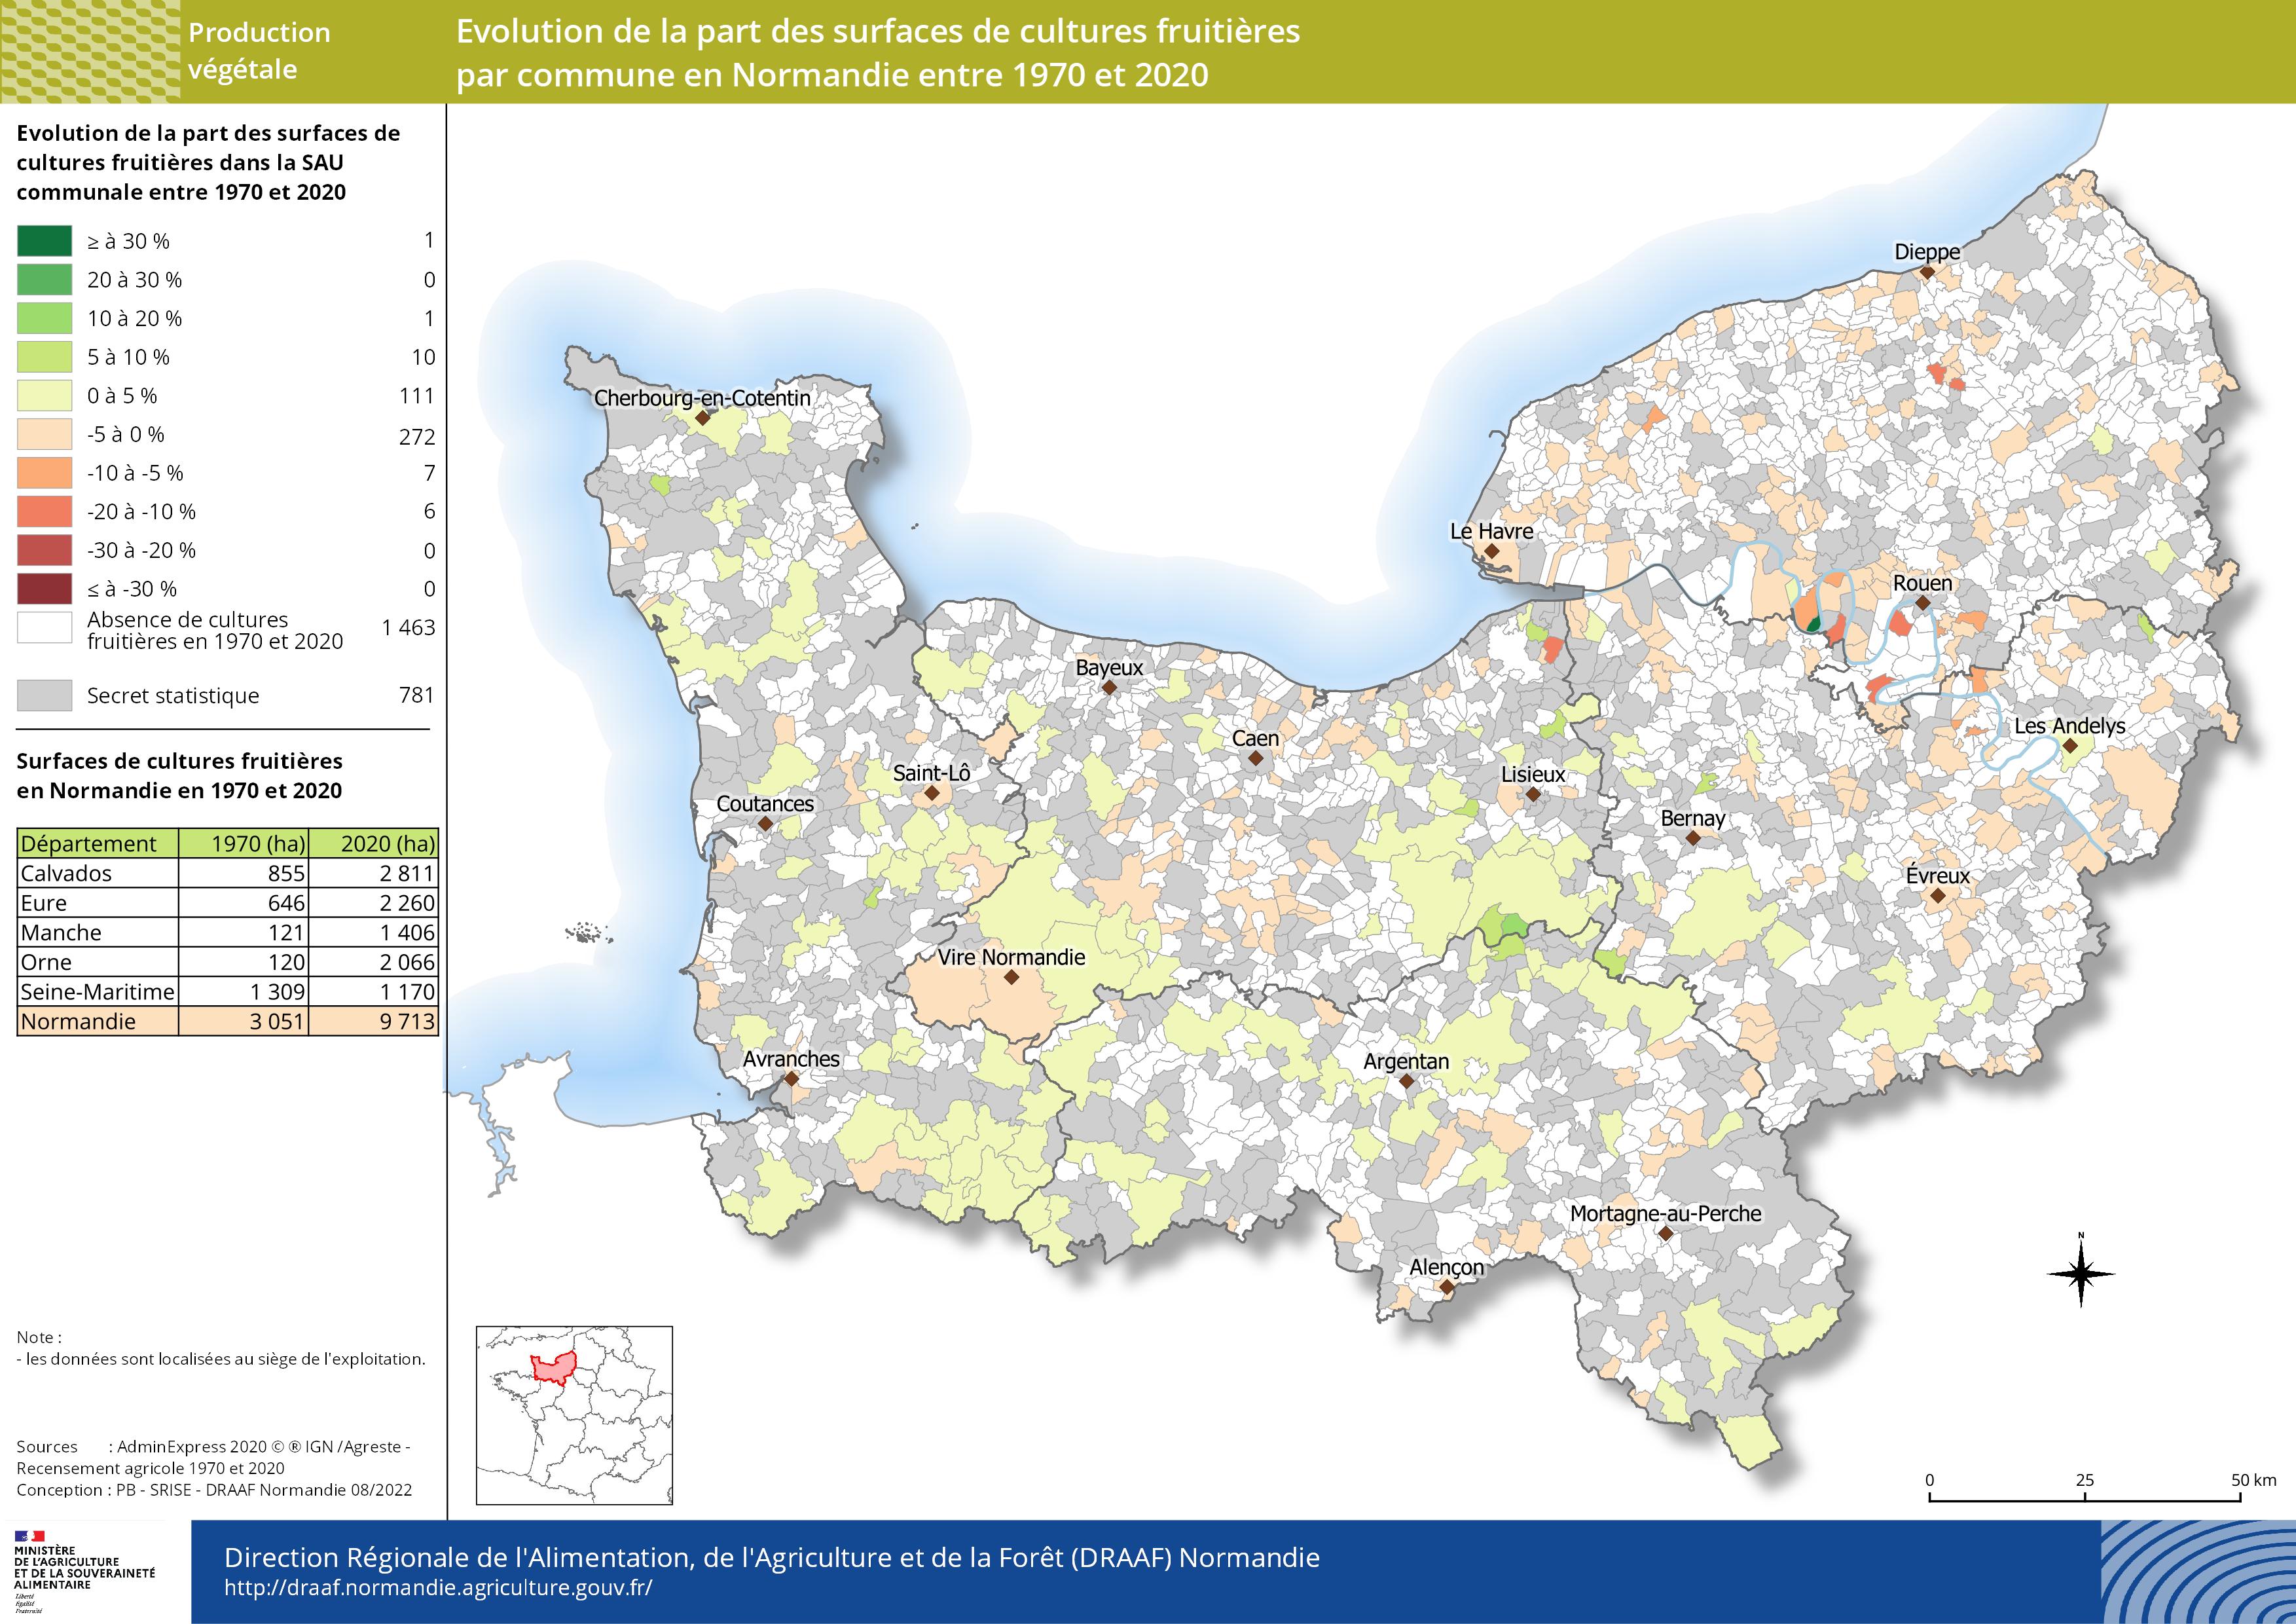 carte représentant l'évolution de la part des surfaces de cultures fruitières par commune en Normandie entre 1970 et 2020